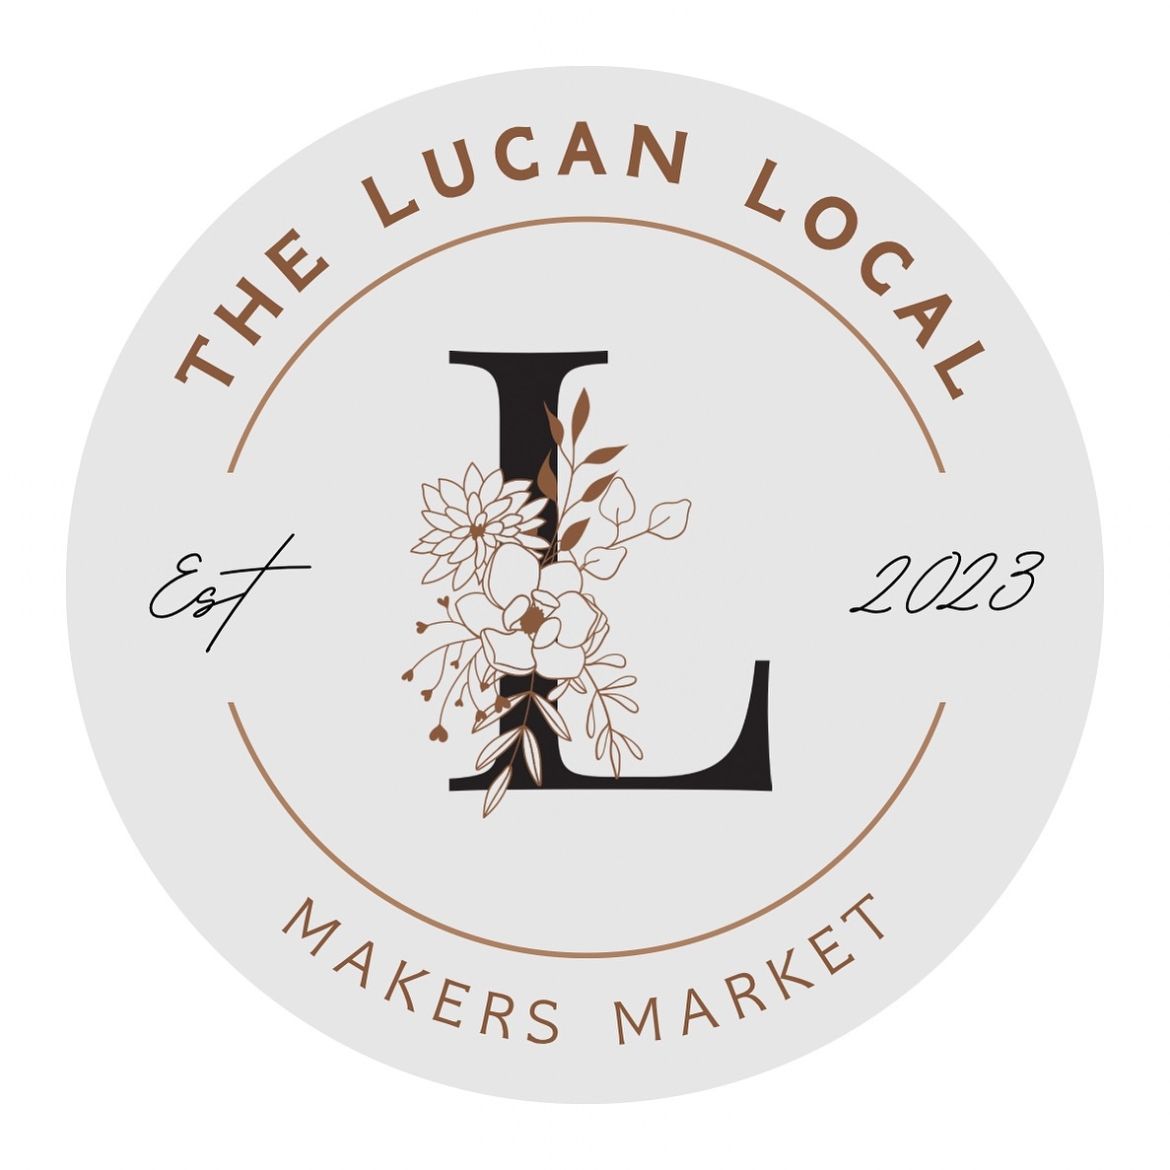 The Lucan Local Logo